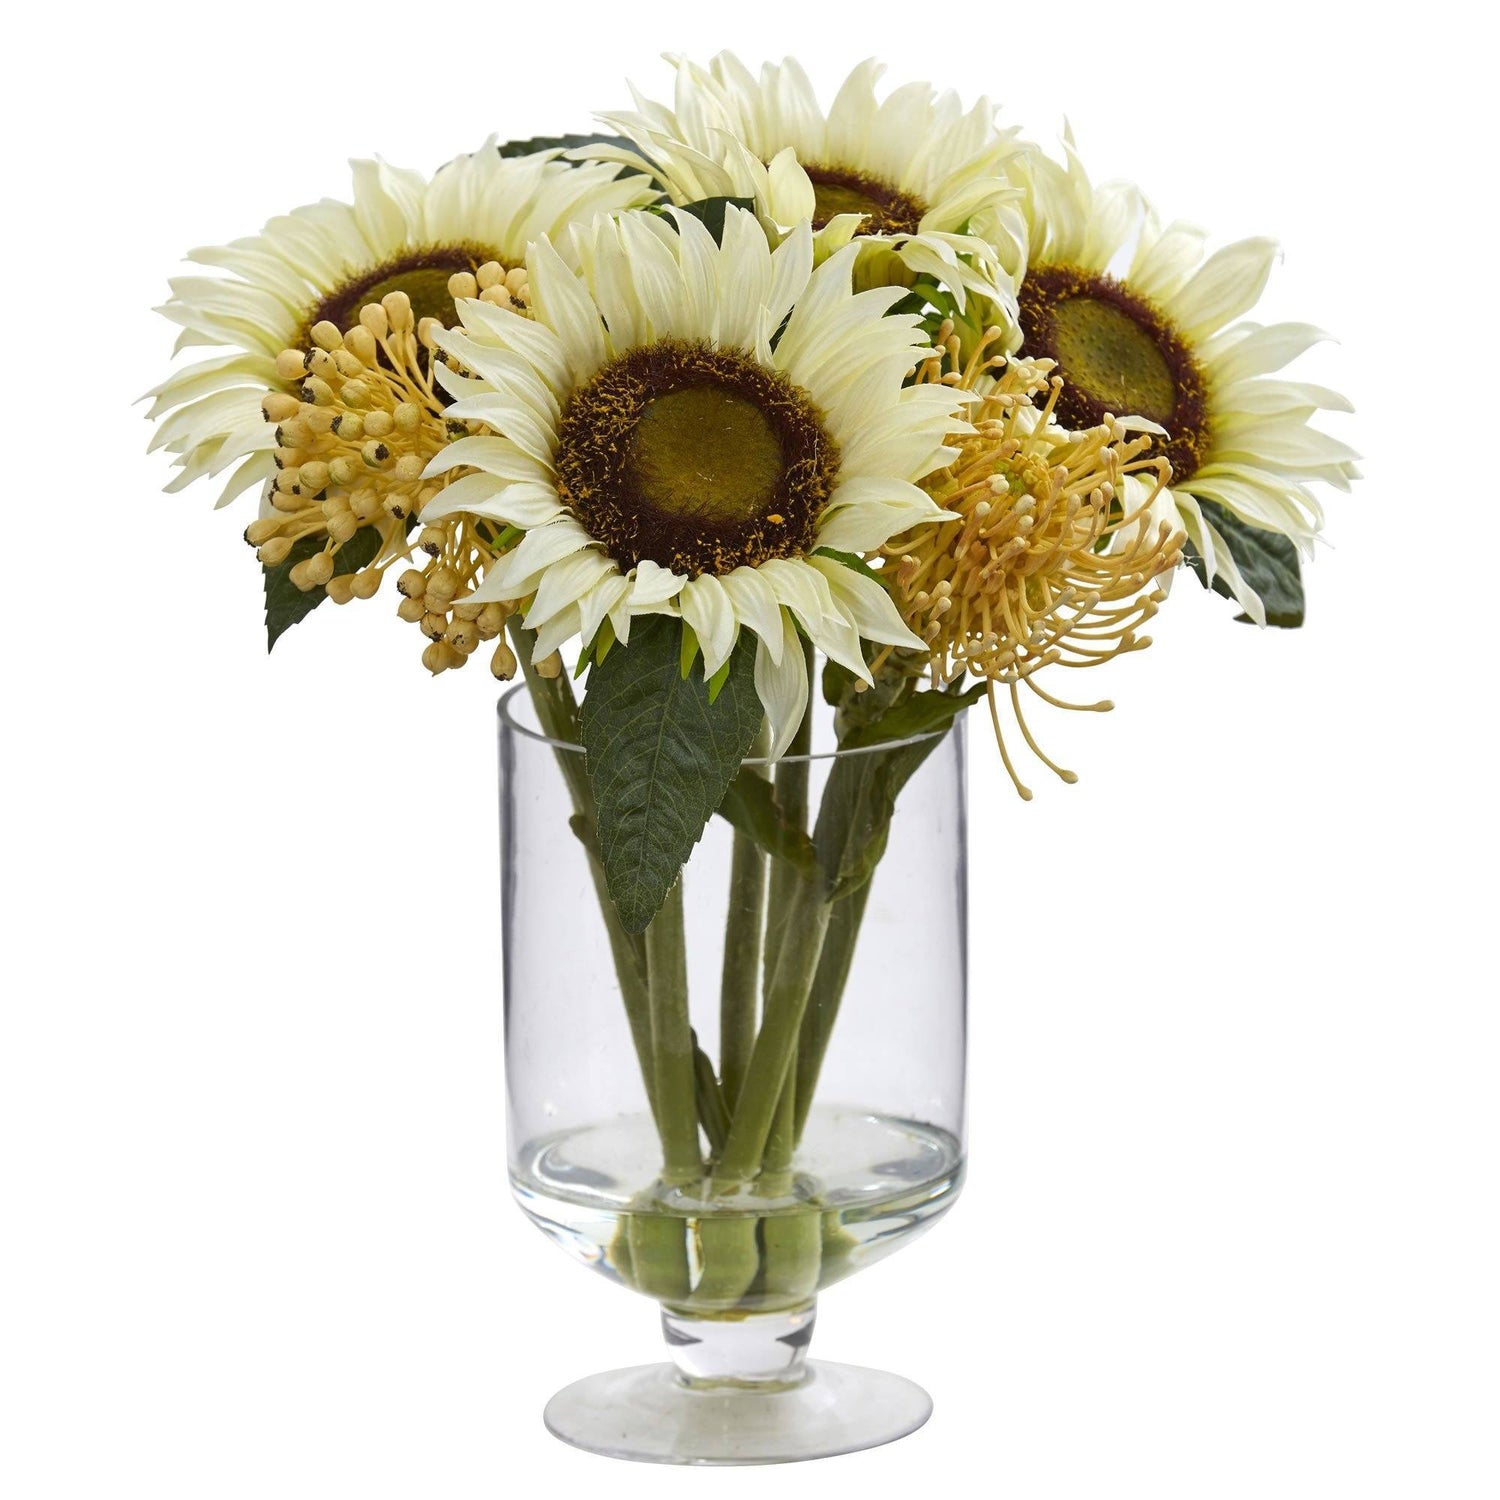 12” Sunflower & Sedum Artificial Arrangement in Vase